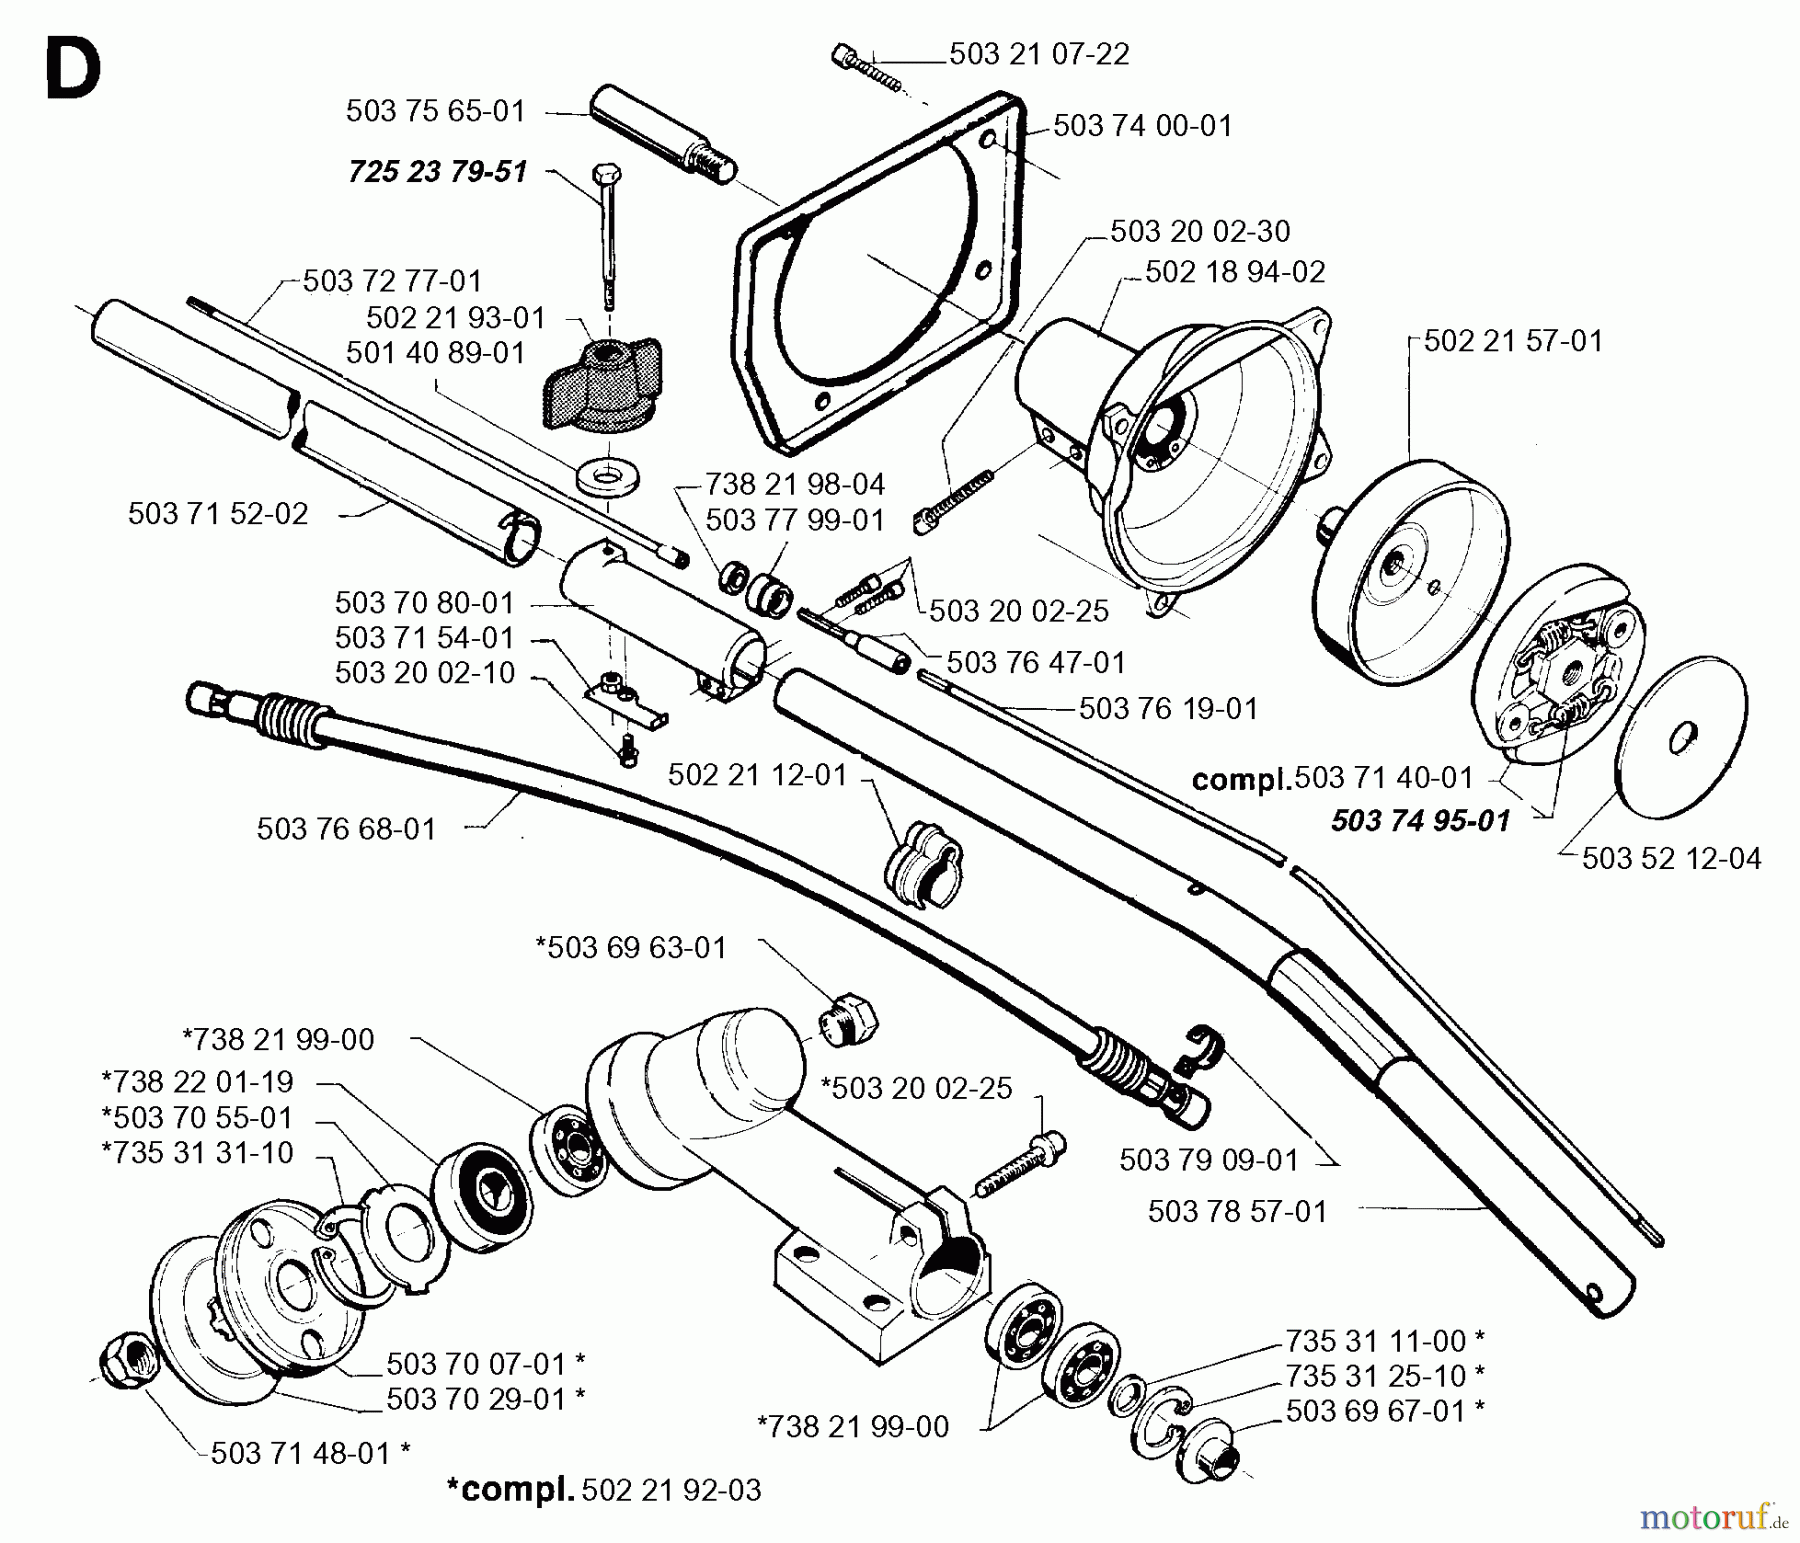  Jonsered Motorsensen, Trimmer BP40 - Jonsered String/Brush Trimmer (1996-03) BEVEL GEAR SHAFT